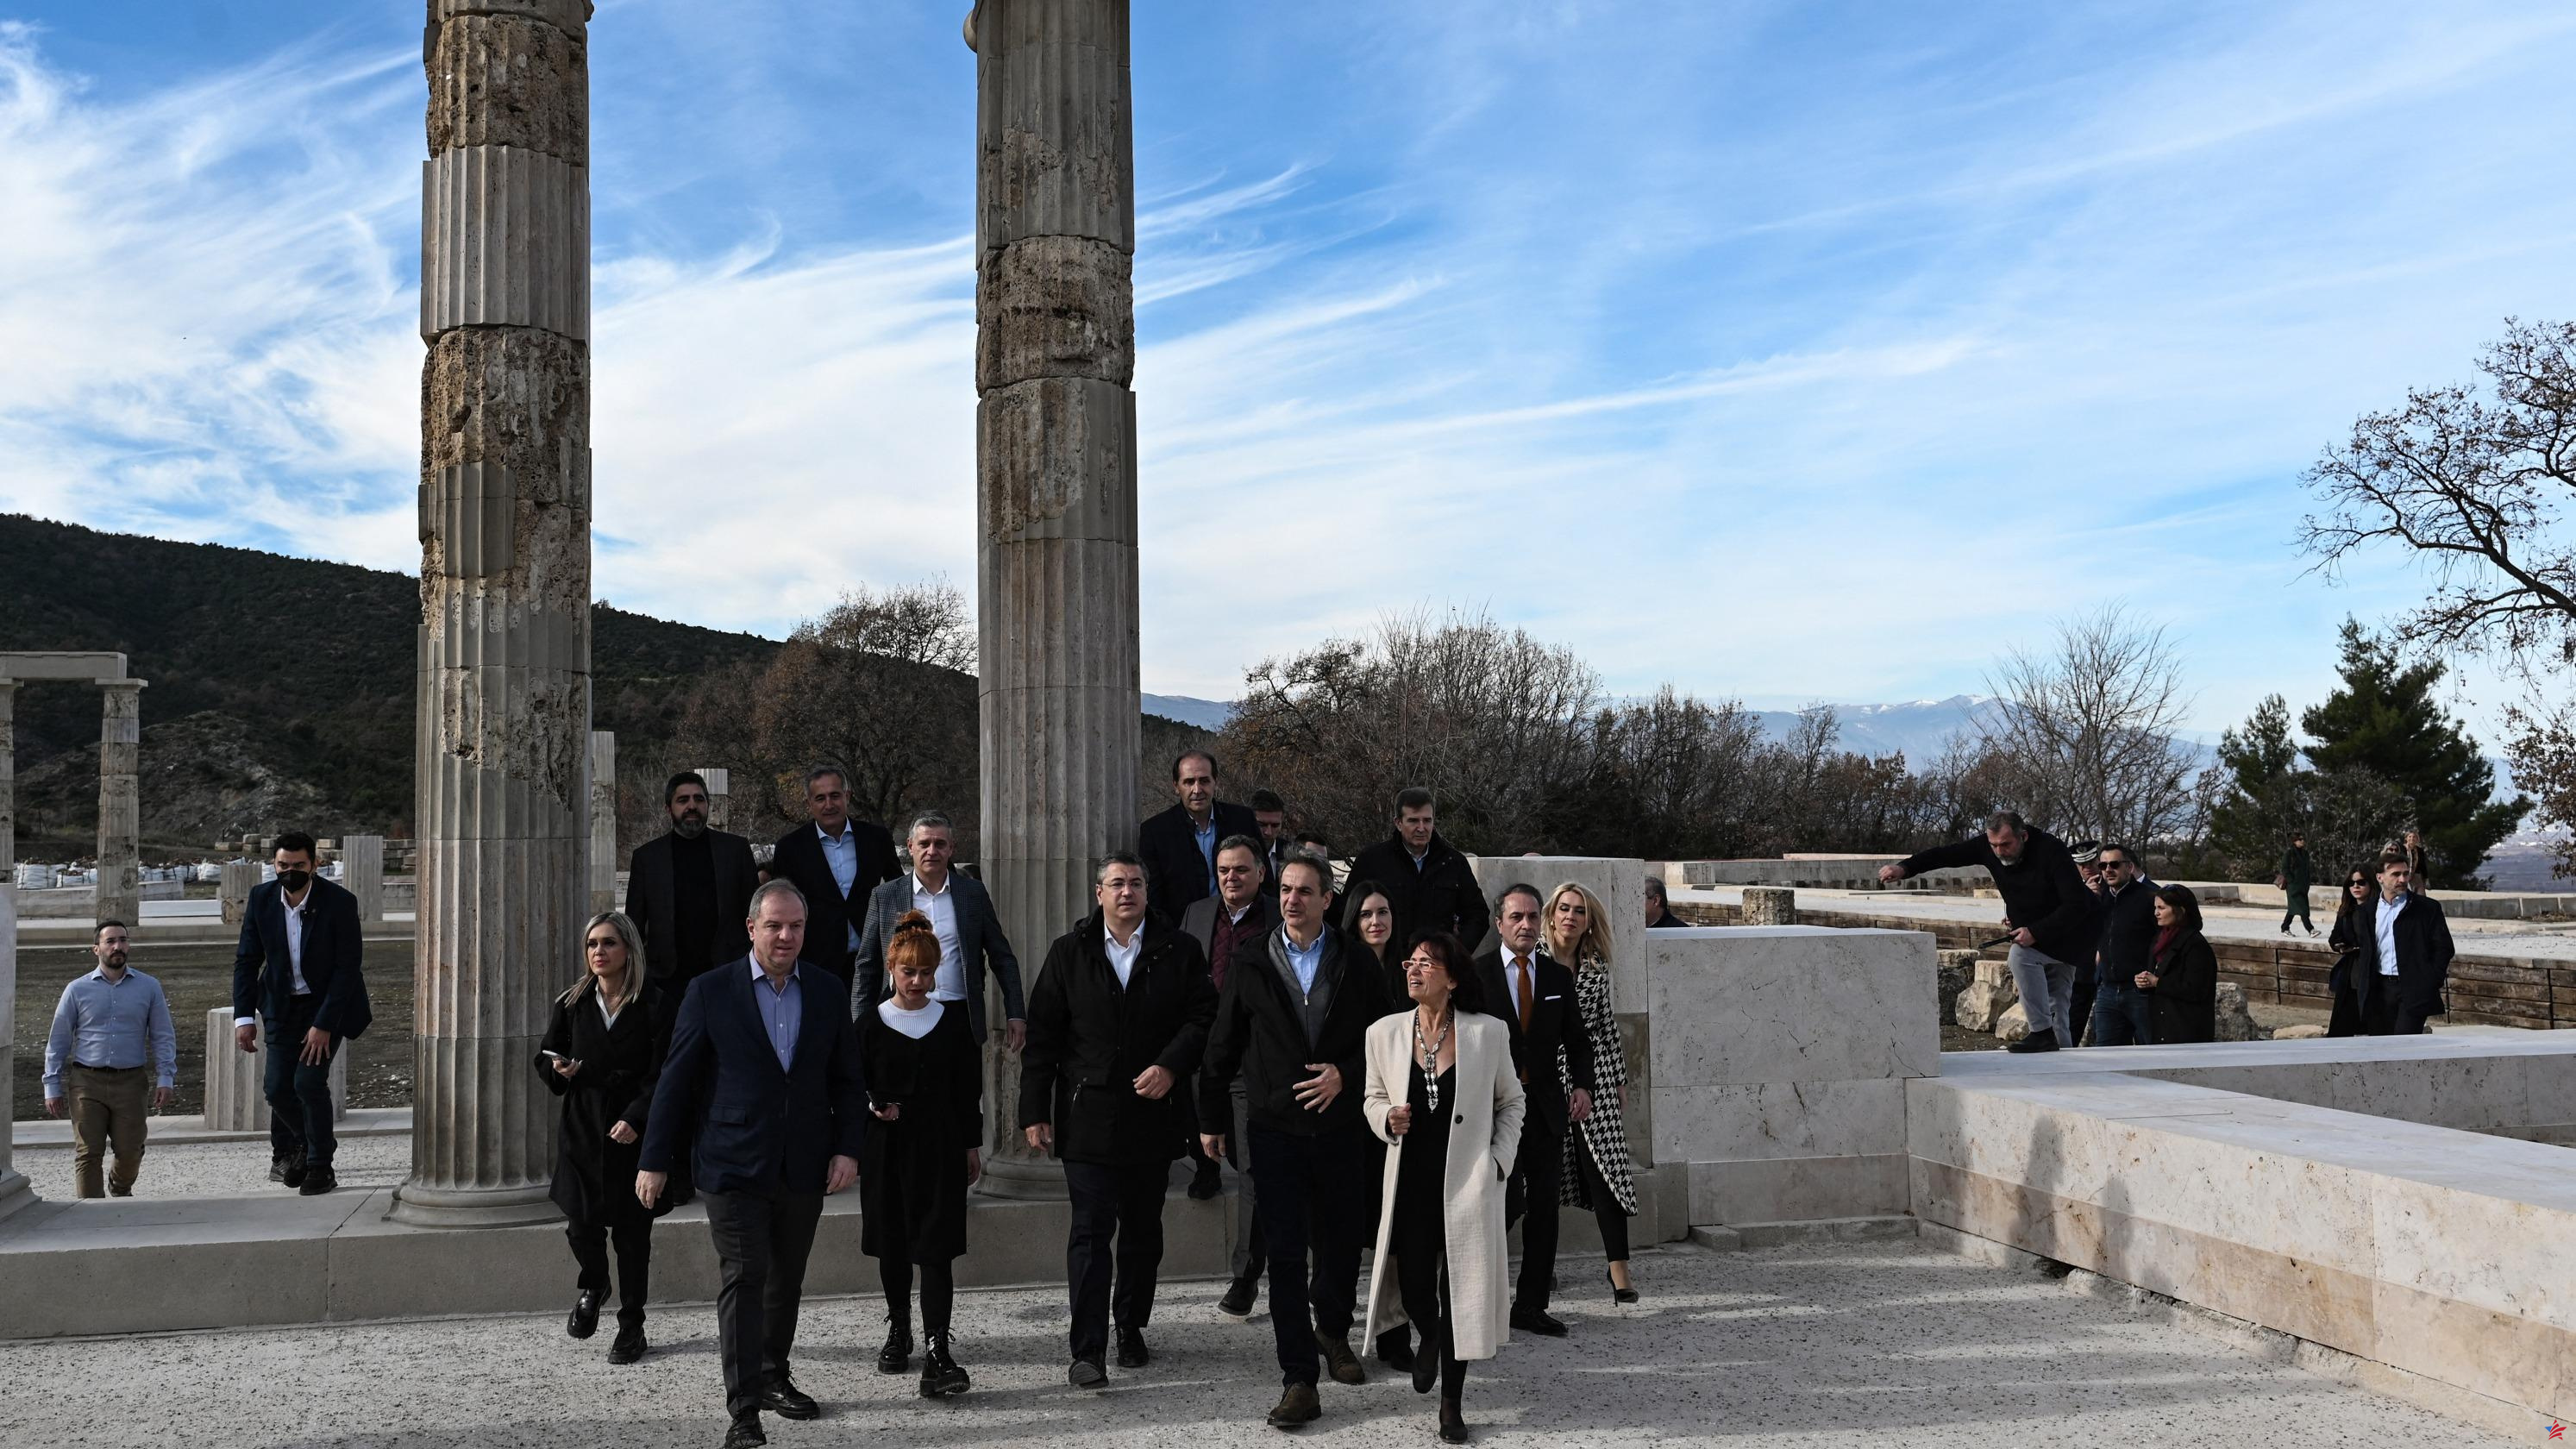 Grecia: el palacio donde Alejandro Magno fue proclamado rey finalmente restaurado tras 16 años de obras